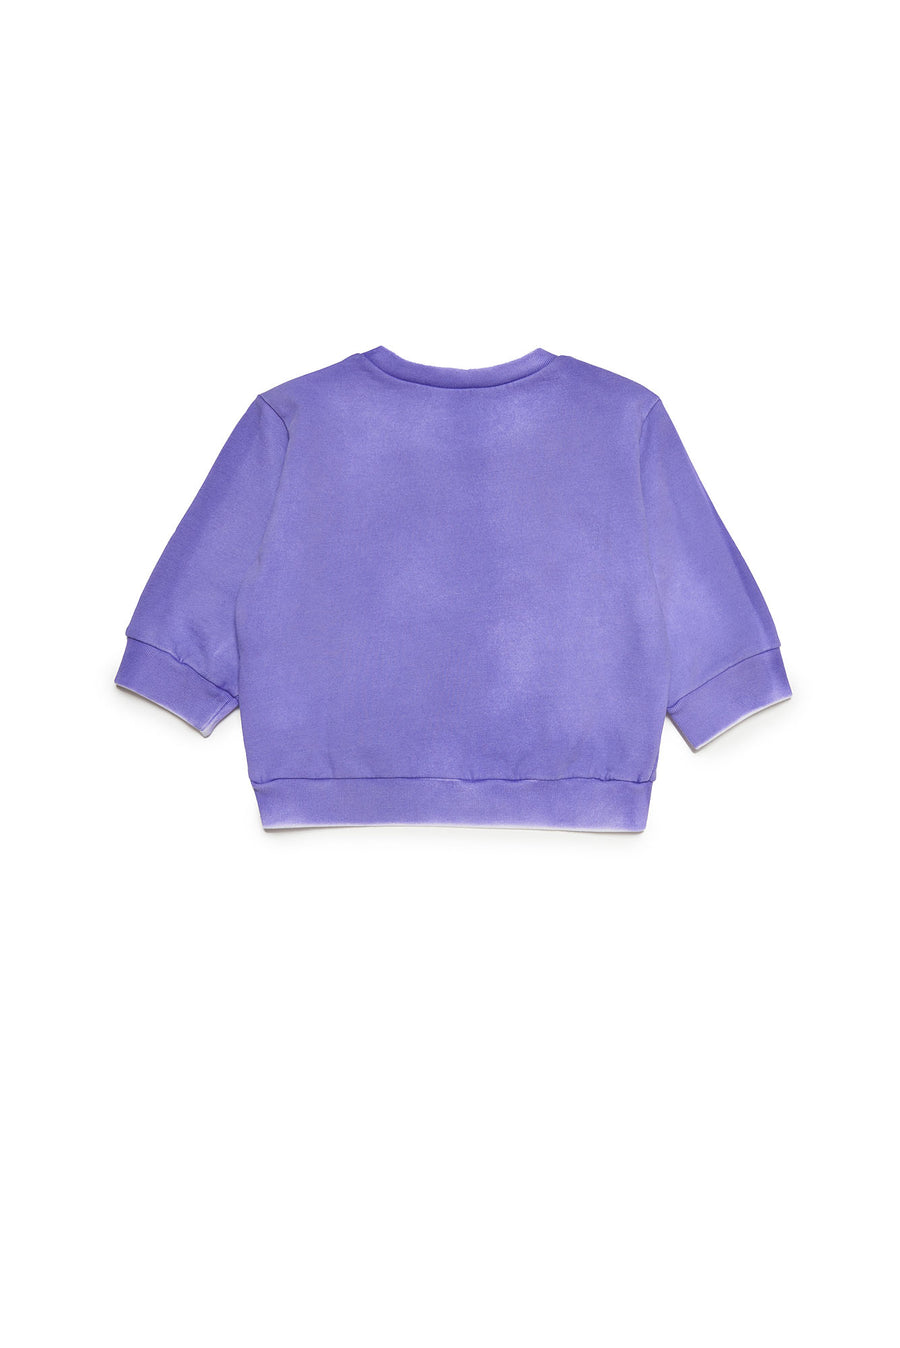 Purple n21 print sweatshirt by N21